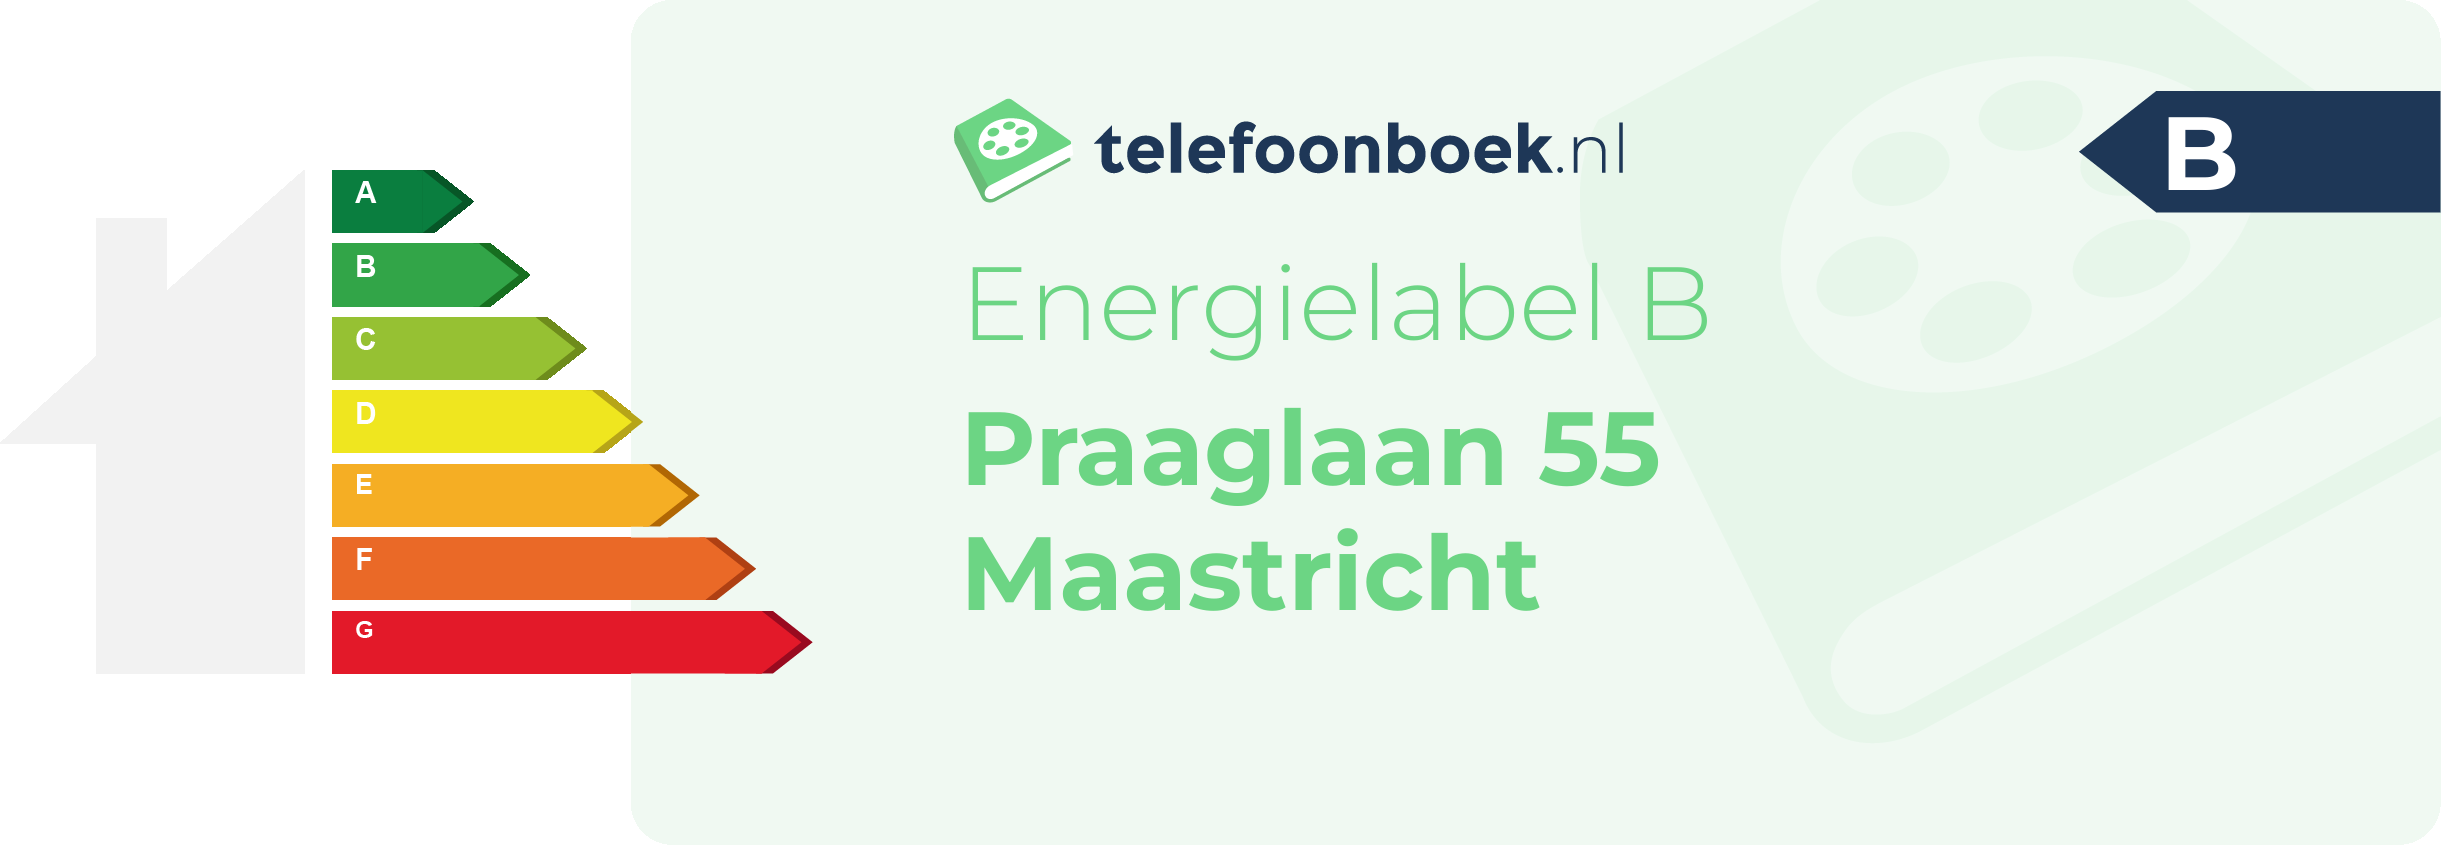 Energielabel Praaglaan 55 Maastricht